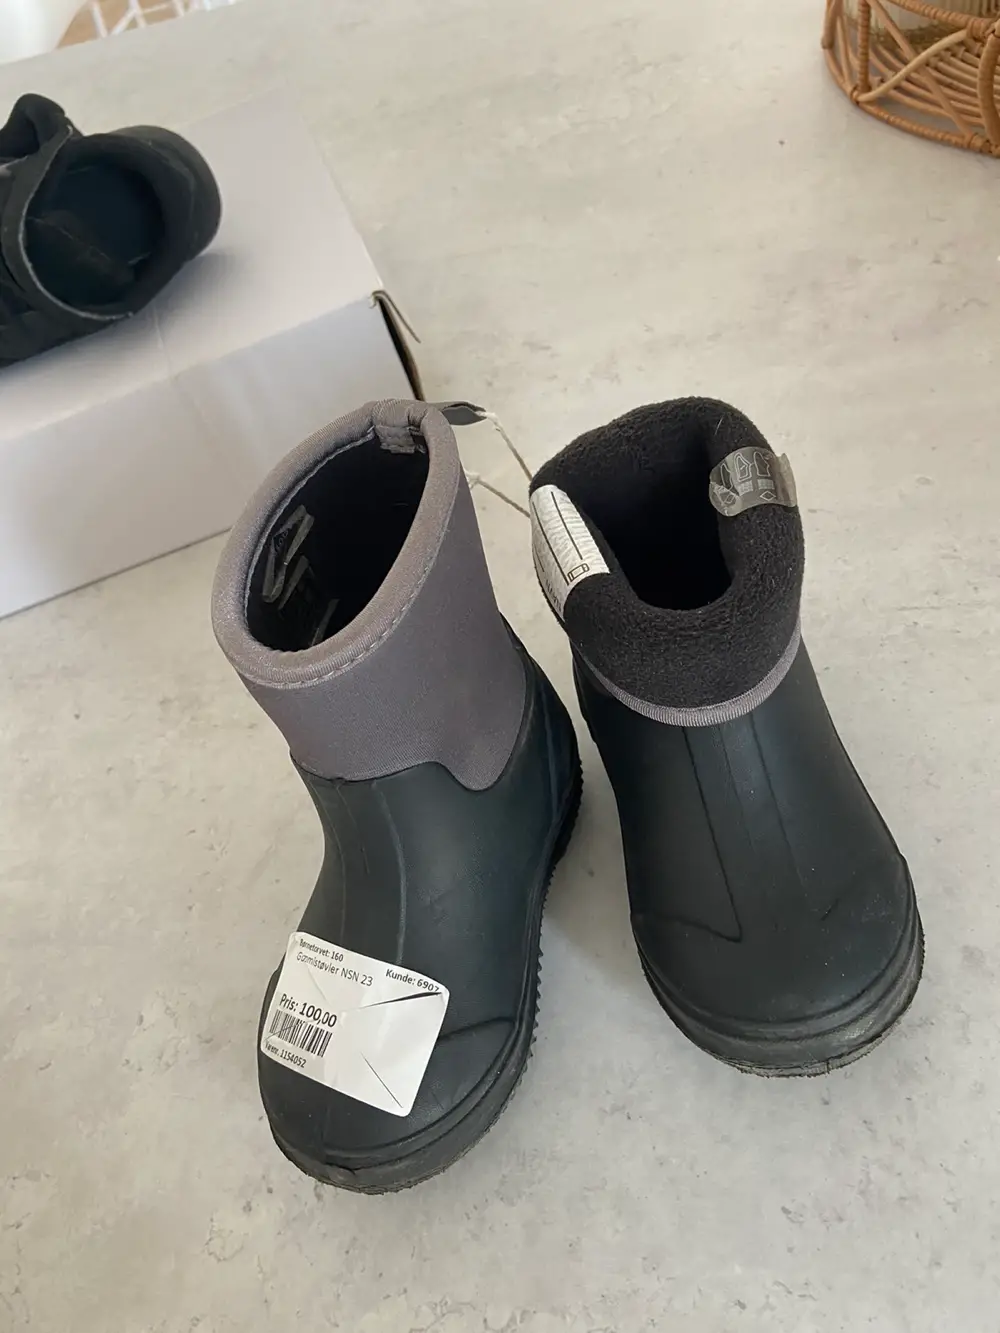 Køb Kvickly Gummistøvler størrelse 23 af Stine på Reshopper · Shop secondhand til børn, mor og bolig